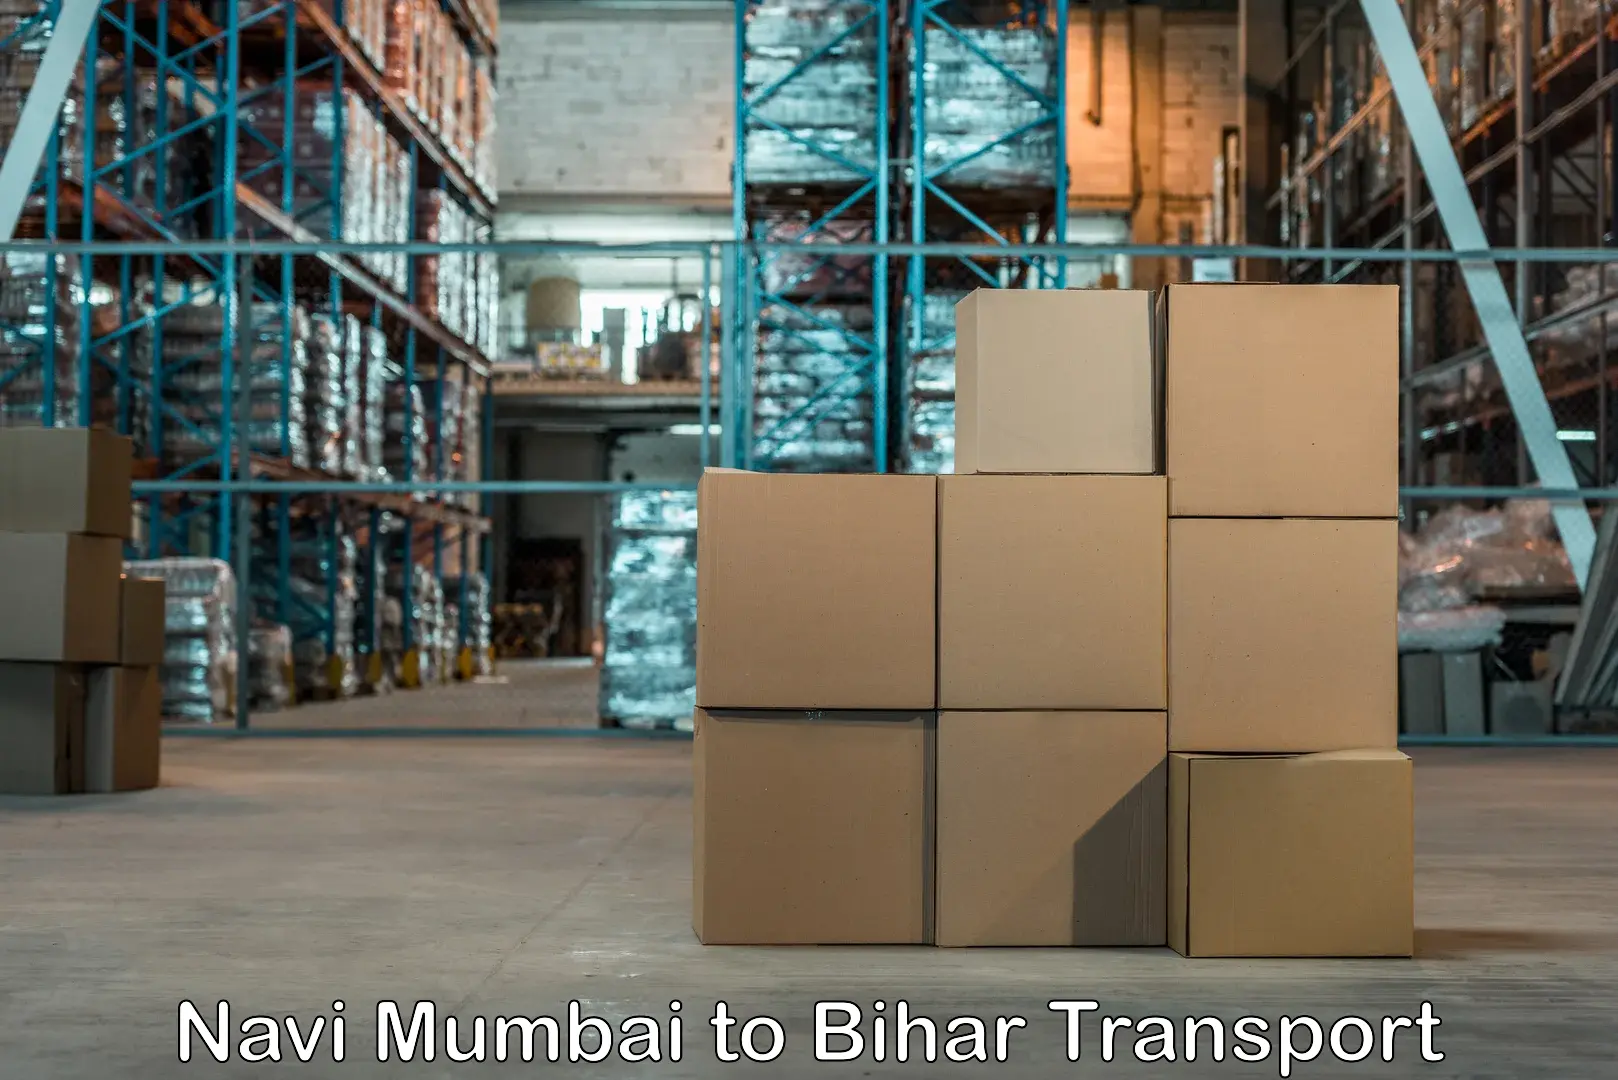 Bike shipping service Navi Mumbai to Barh